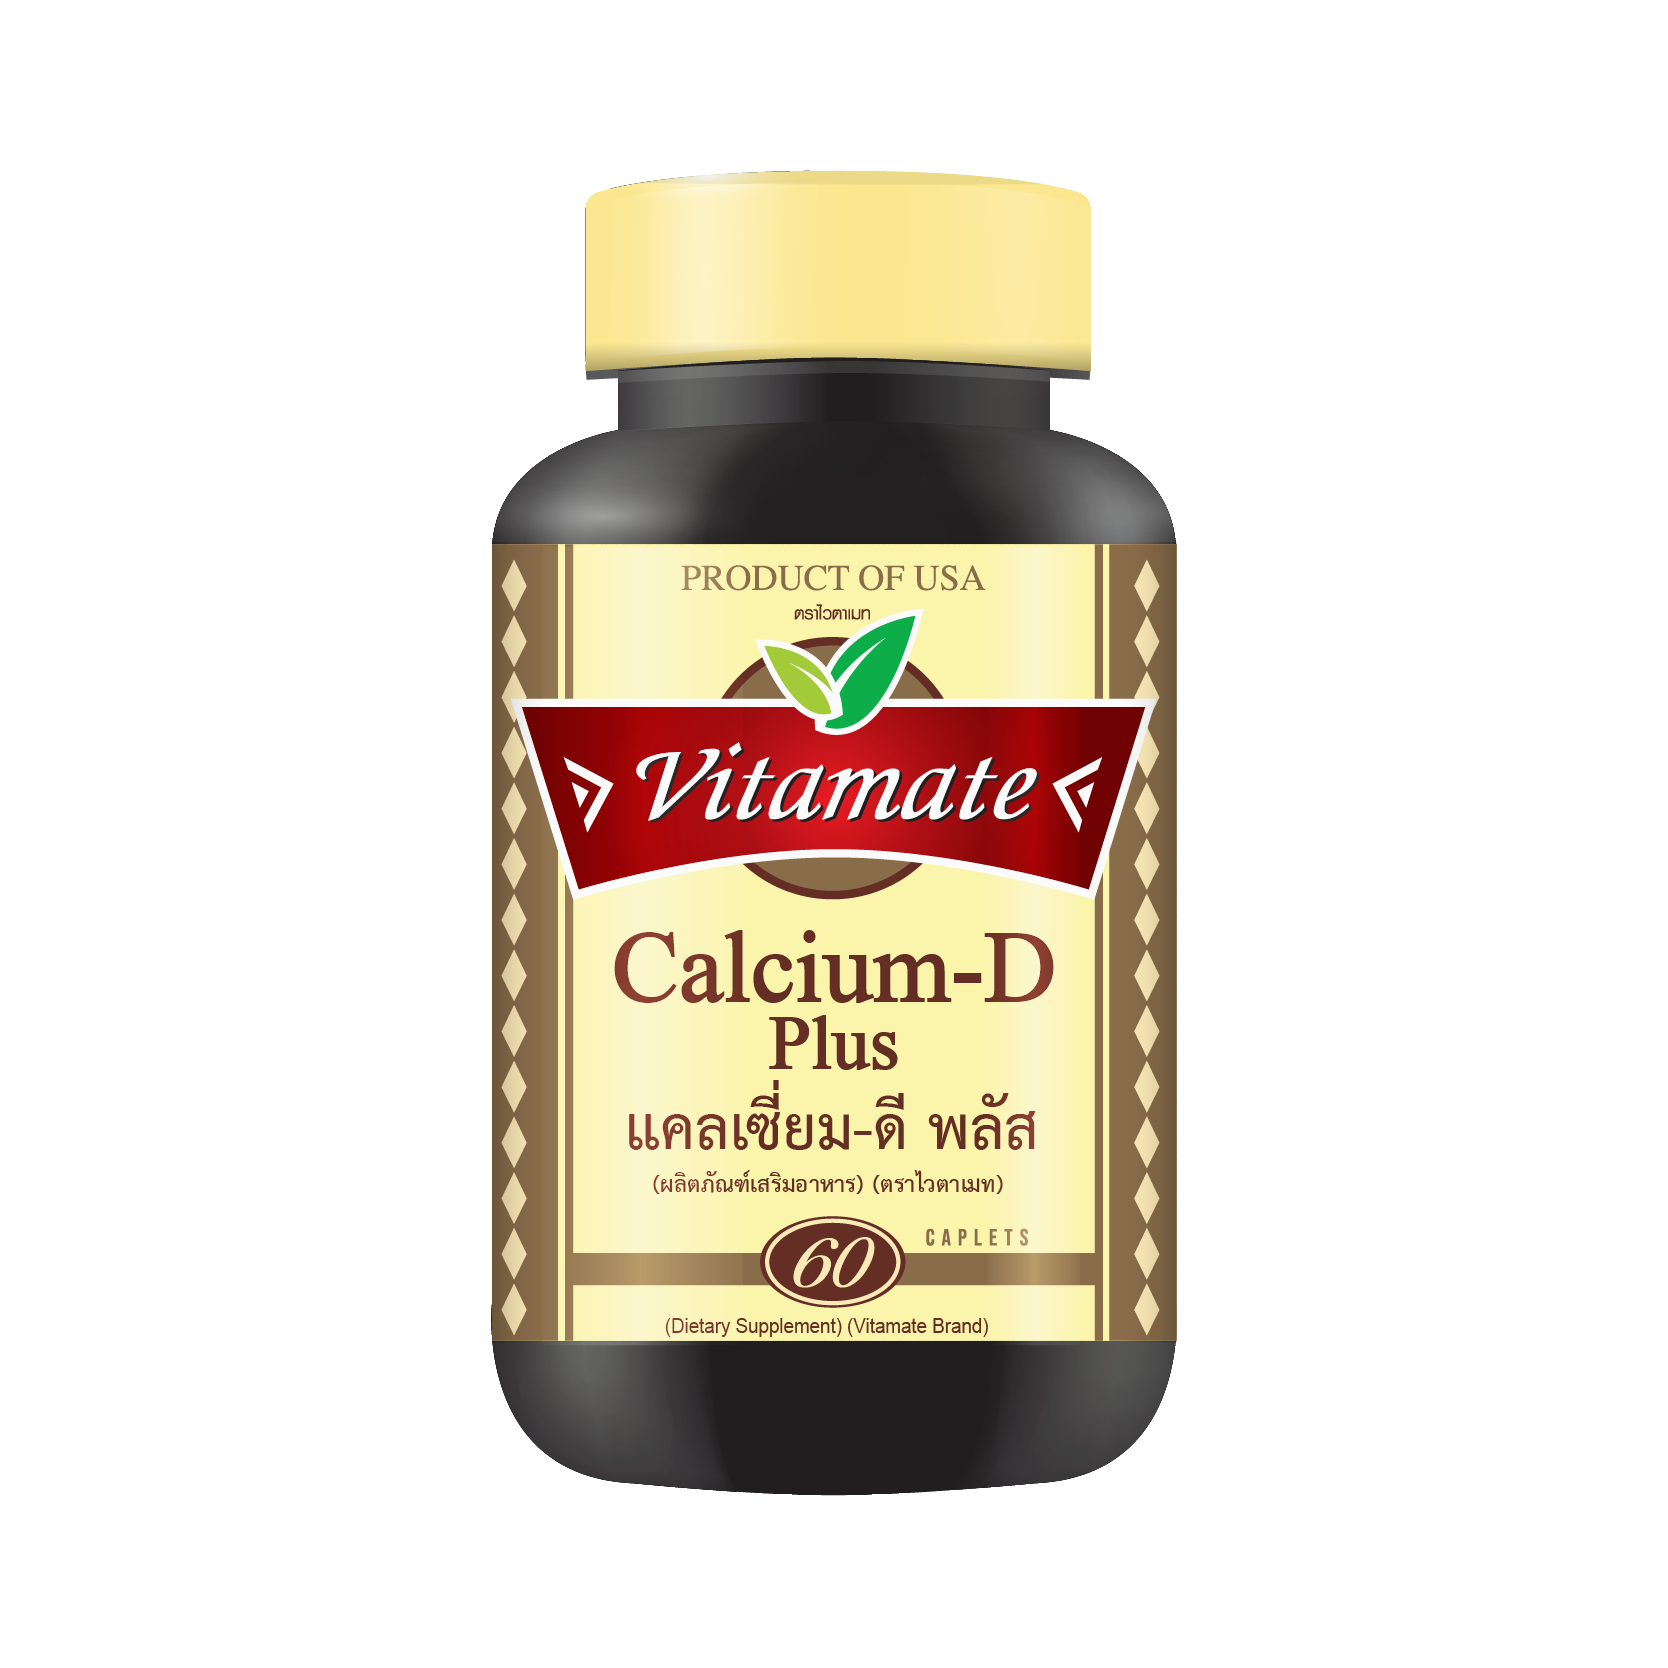 Vitamate Calcium-D Plus